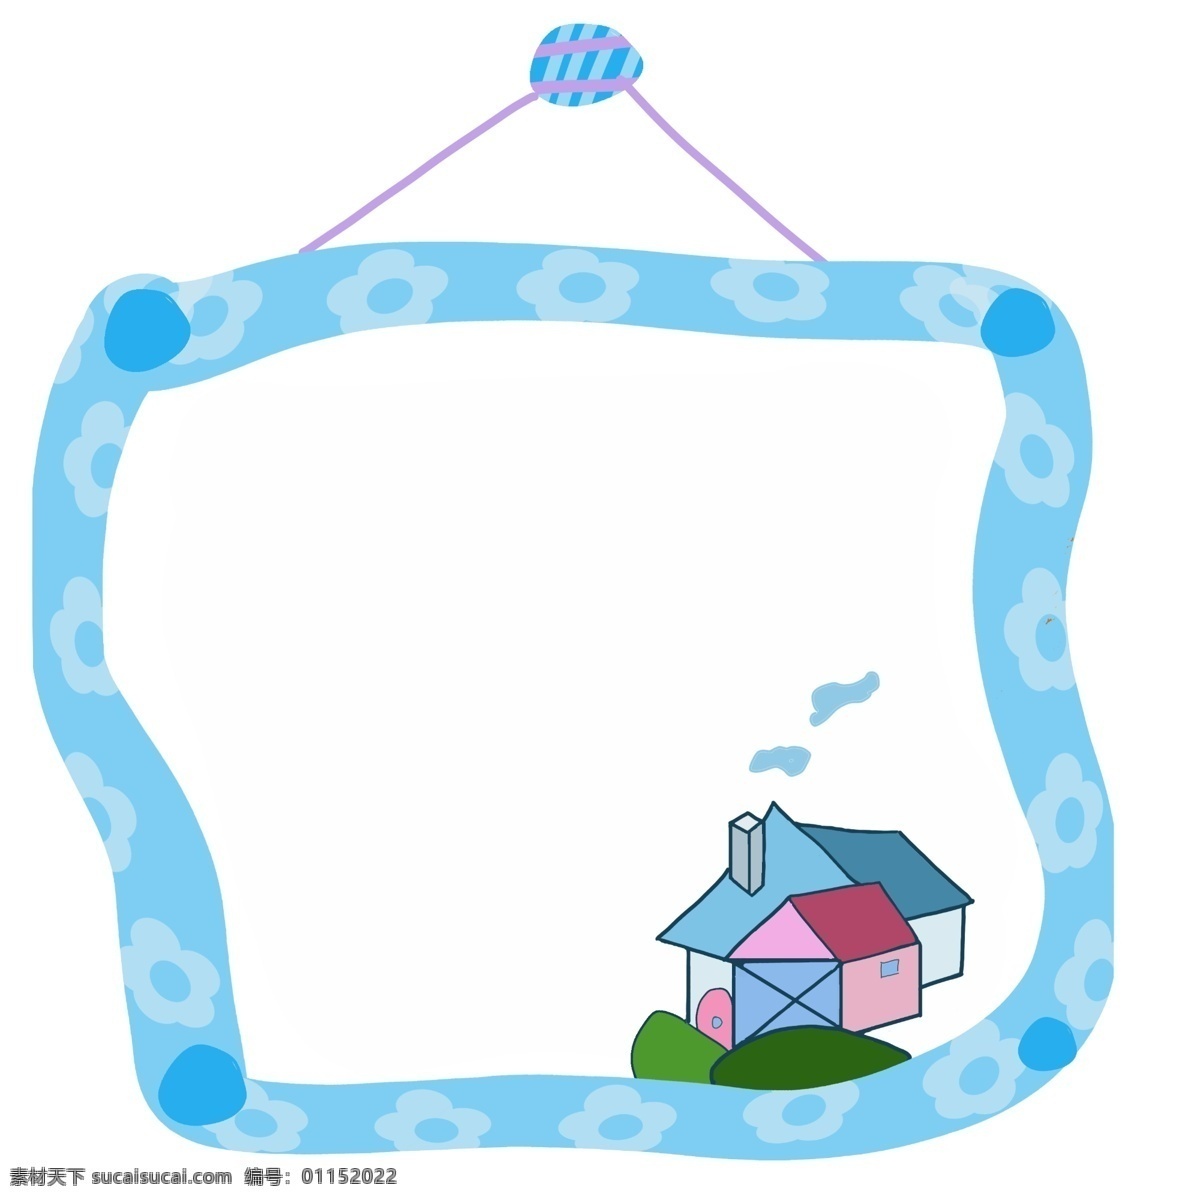 小 房子 装饰 蓝色 边框 漂亮边框 蓝色边框 唯美边框 小房子 蓝色边框插图 烟囱 小框